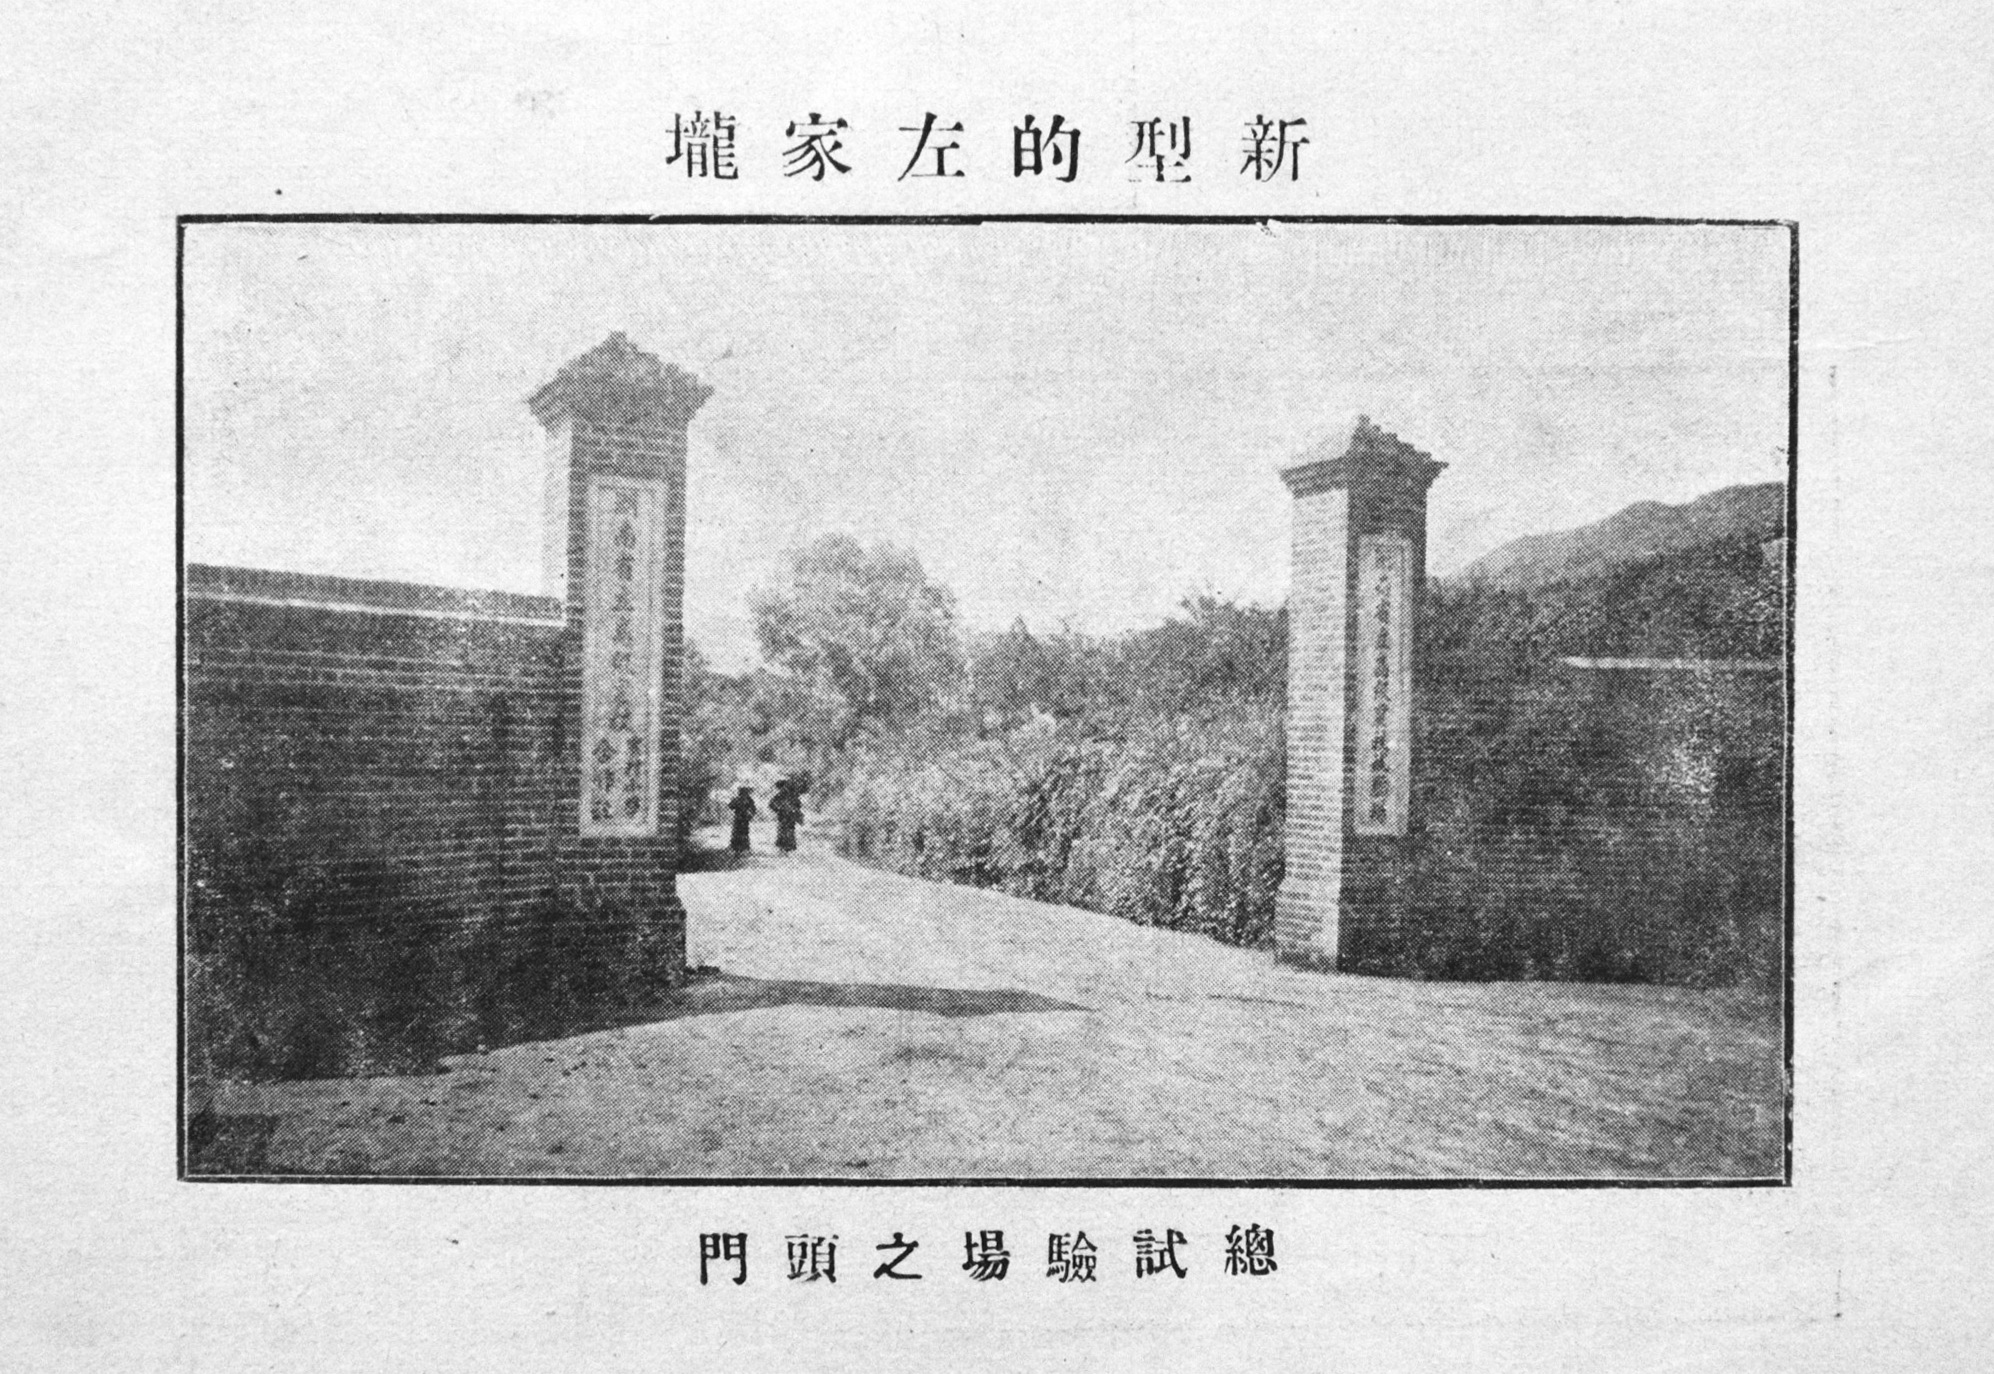 1934年 修业高农总试验场大门